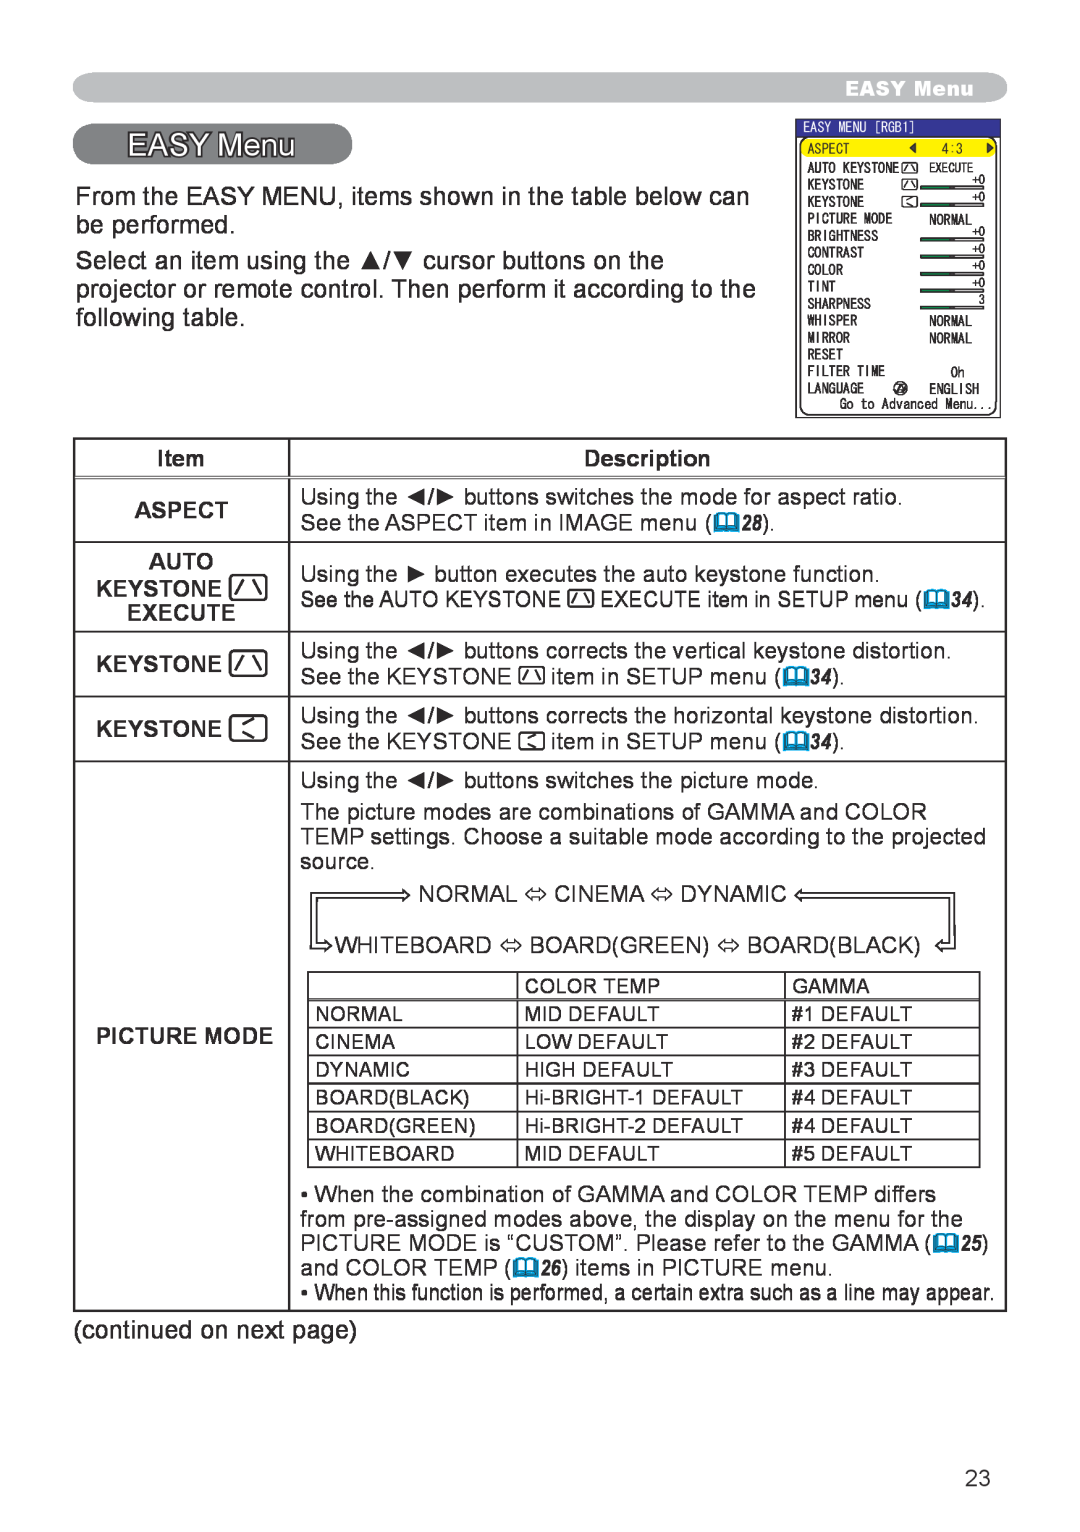 Hitachi CP-X600 user manual EASY Menu, Description, Aspect, Auto, Keystone, Execute, Picture Mode 